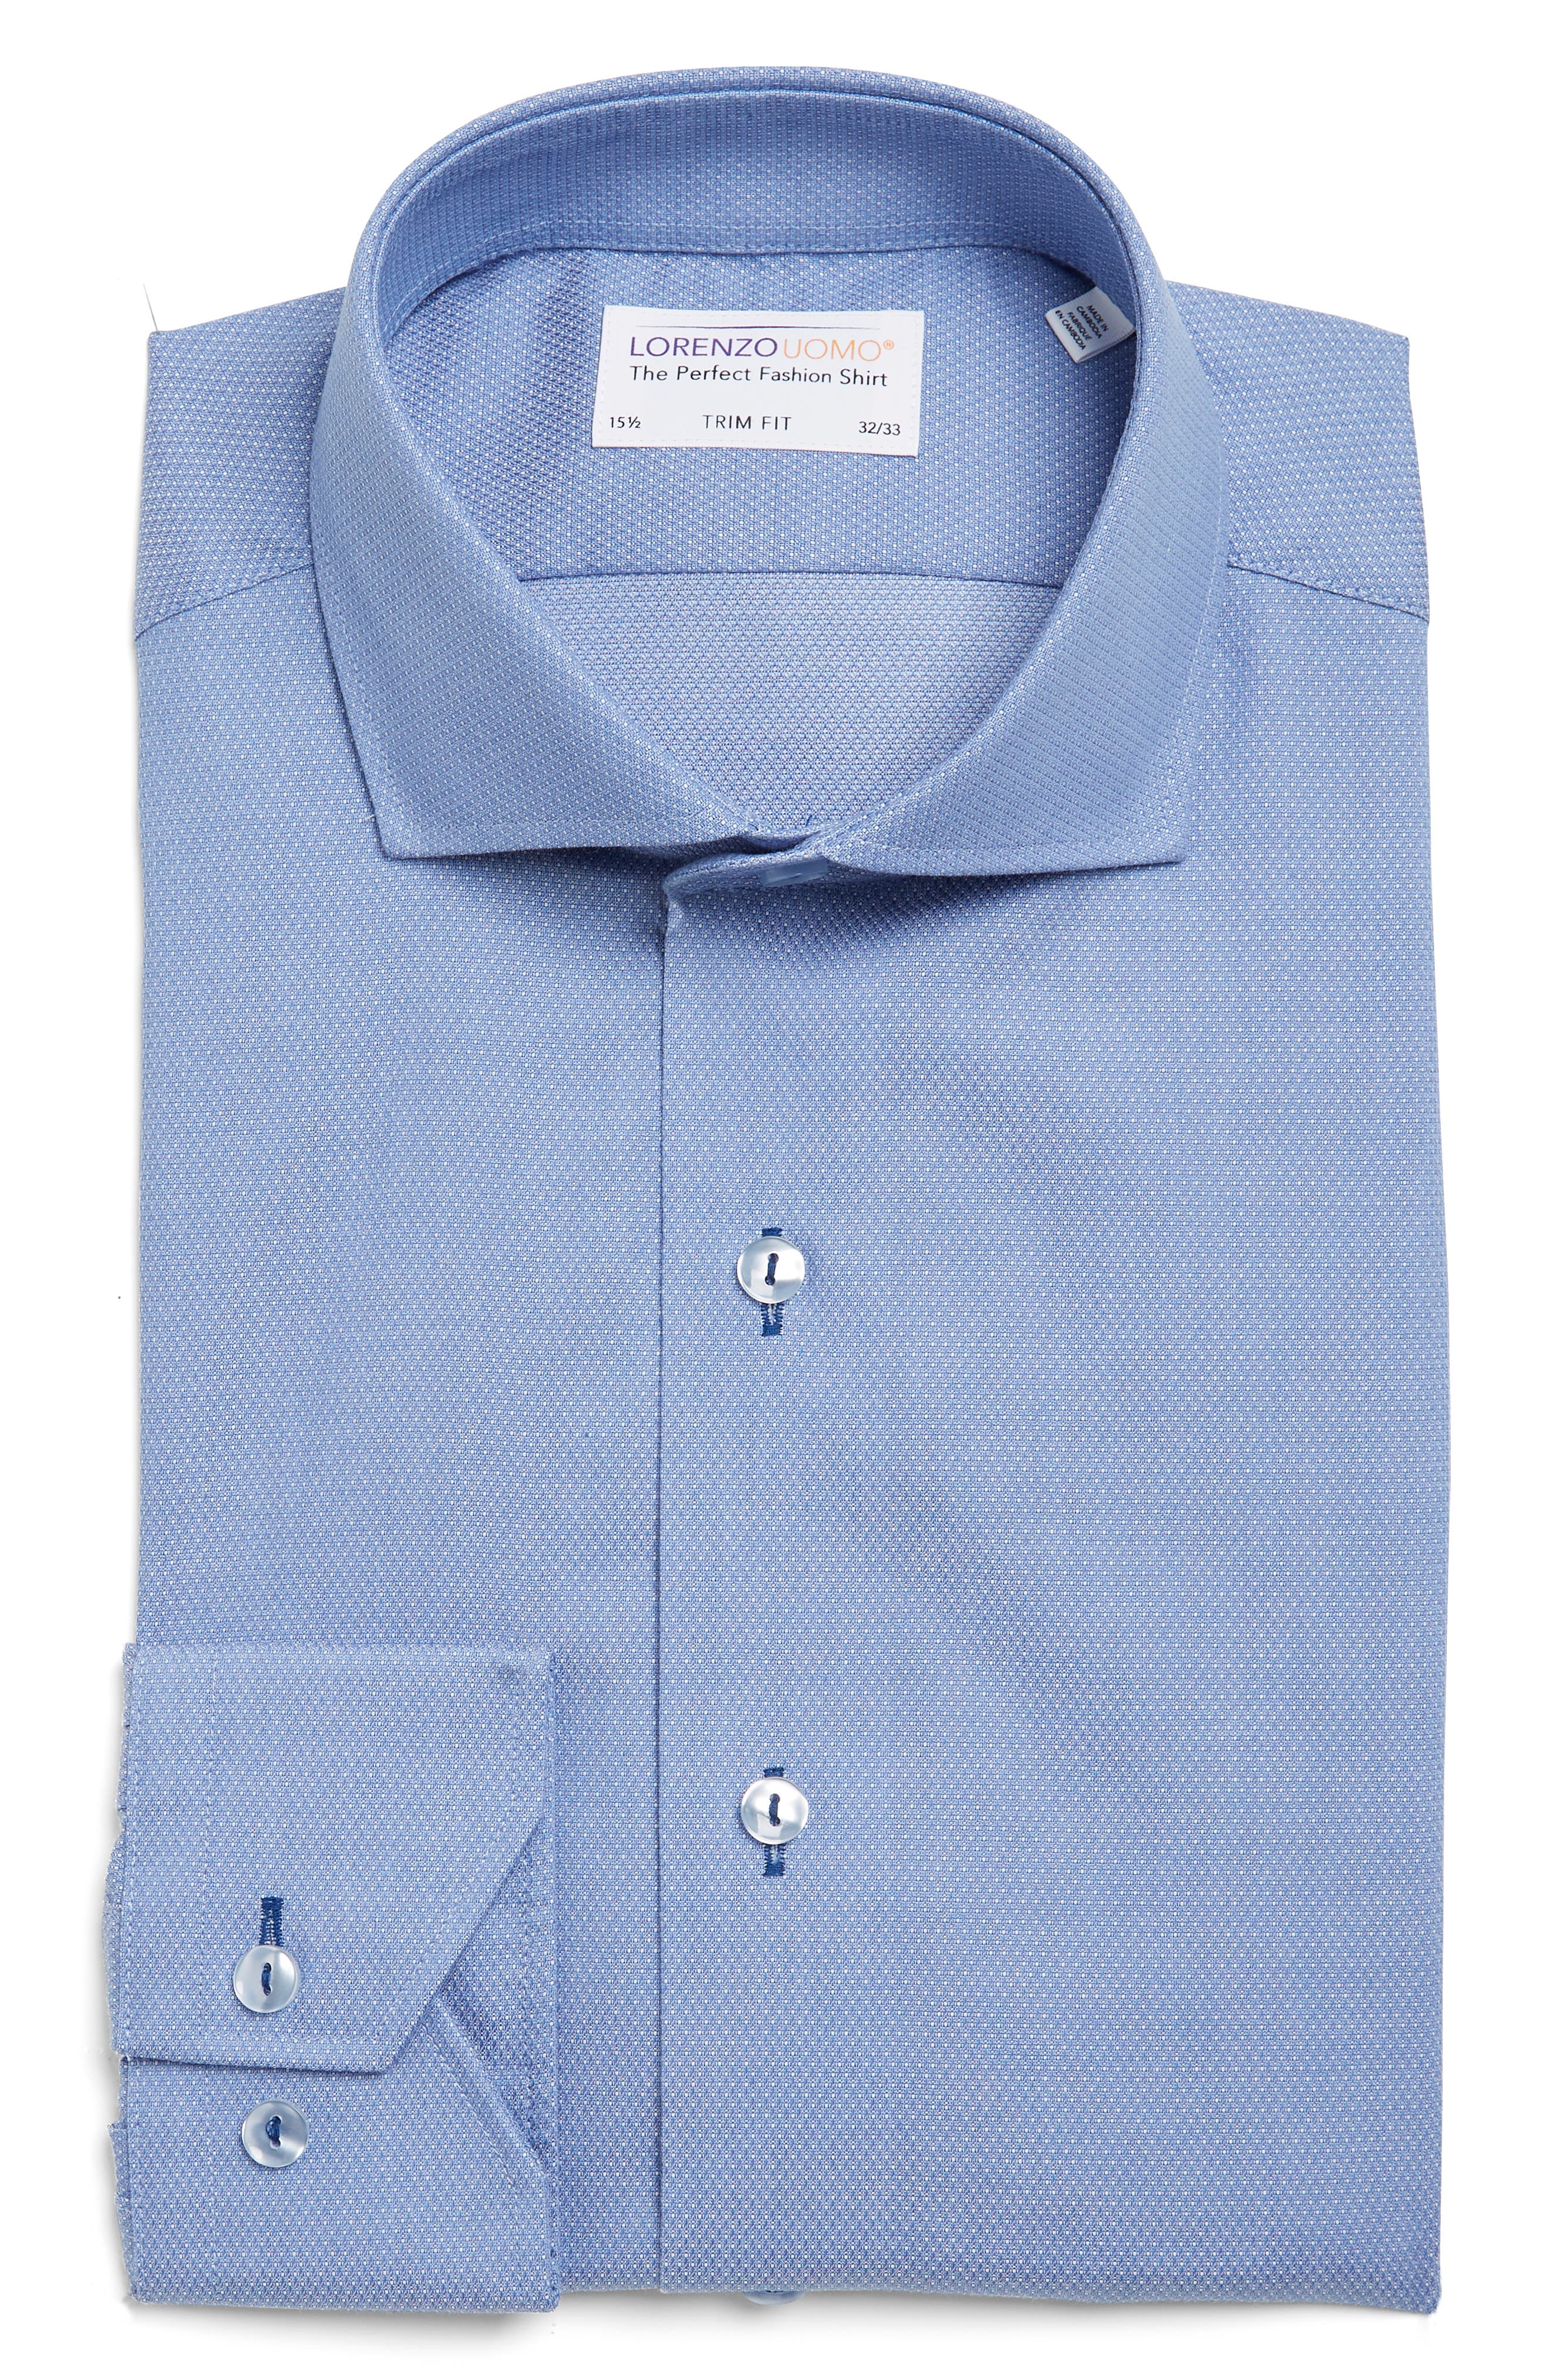 Текстурированная классическая рубашка в горошек с отделкой Trim Fit Lorenzo Uomo